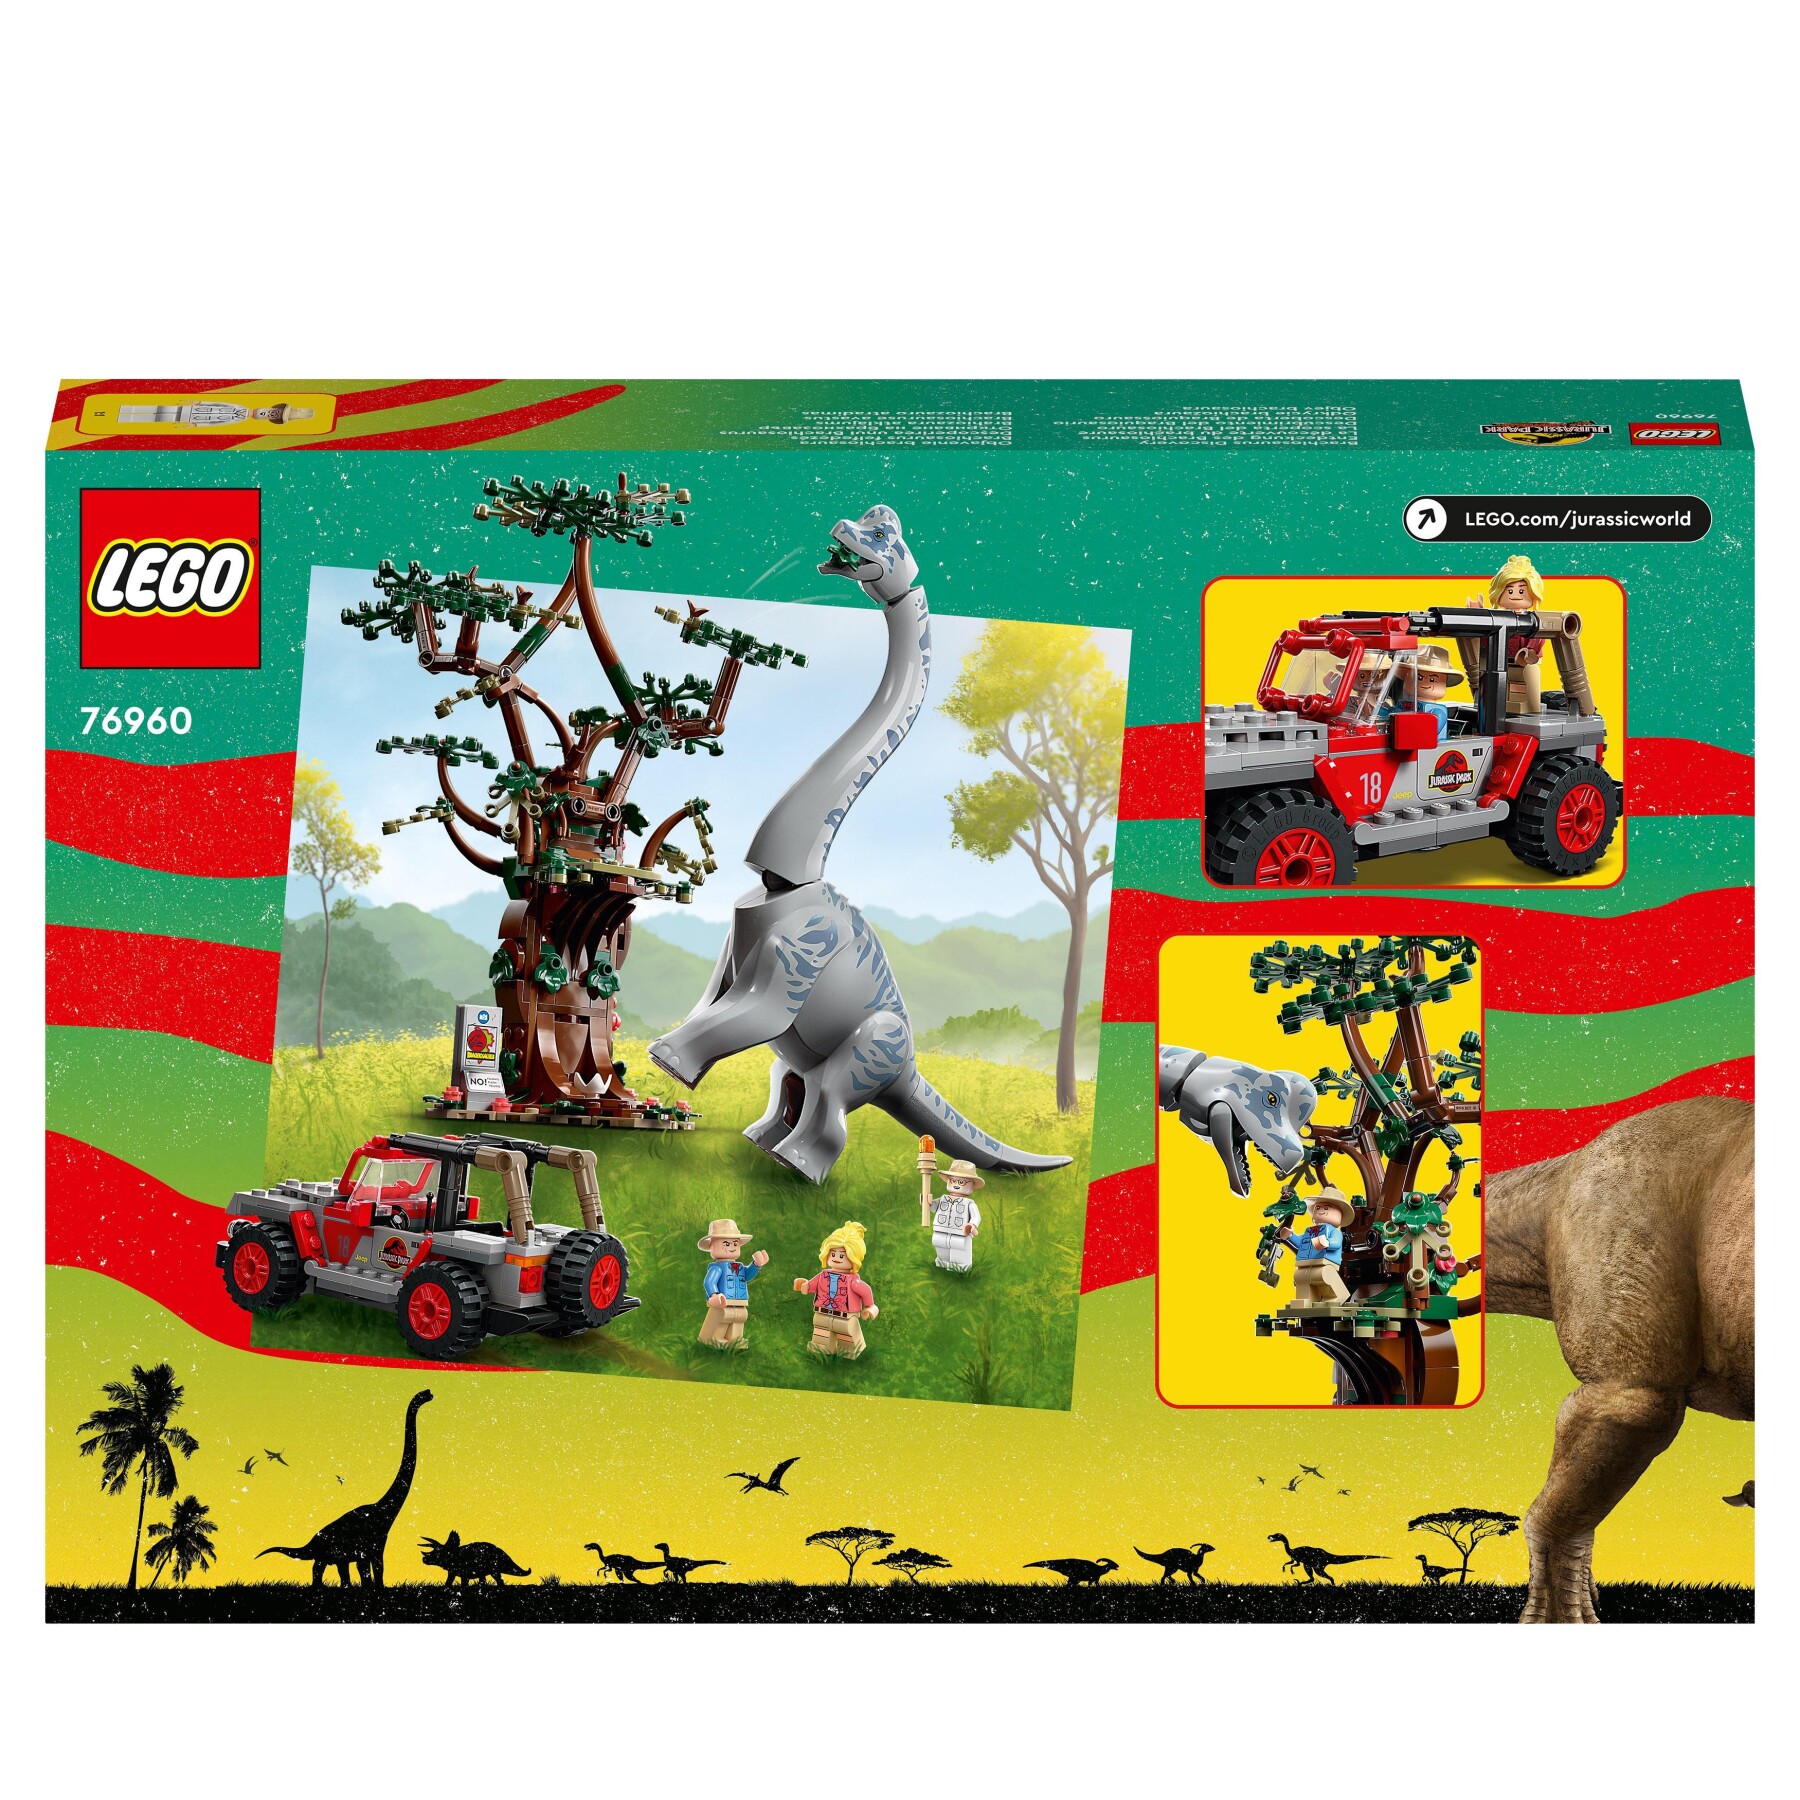 Lego jurassic park 76960 la scoperta del brachiosauro, set con grande dinosauro giocattolo e jeep wrangler da costruire - Jurassic World, LEGO JURASSIC PARK/W